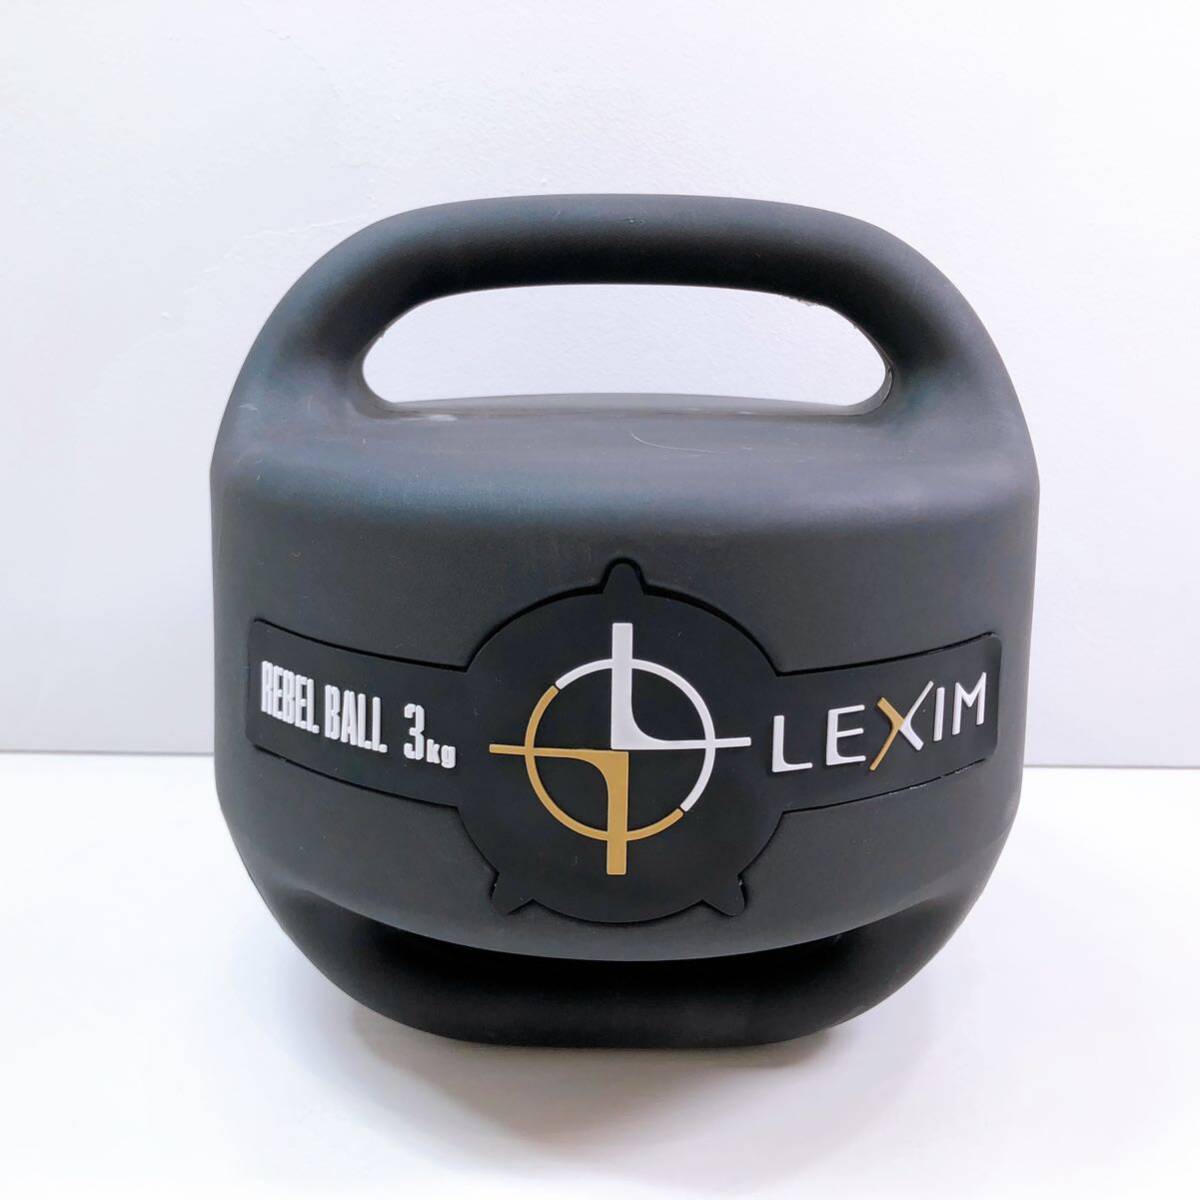 179【中古】elite grips レベルボール LEXIM REBEL BALL 3kg ゴルフ 体幹トレーニング スイング 練習器具 専用ケース 箱付き 現状品の画像2